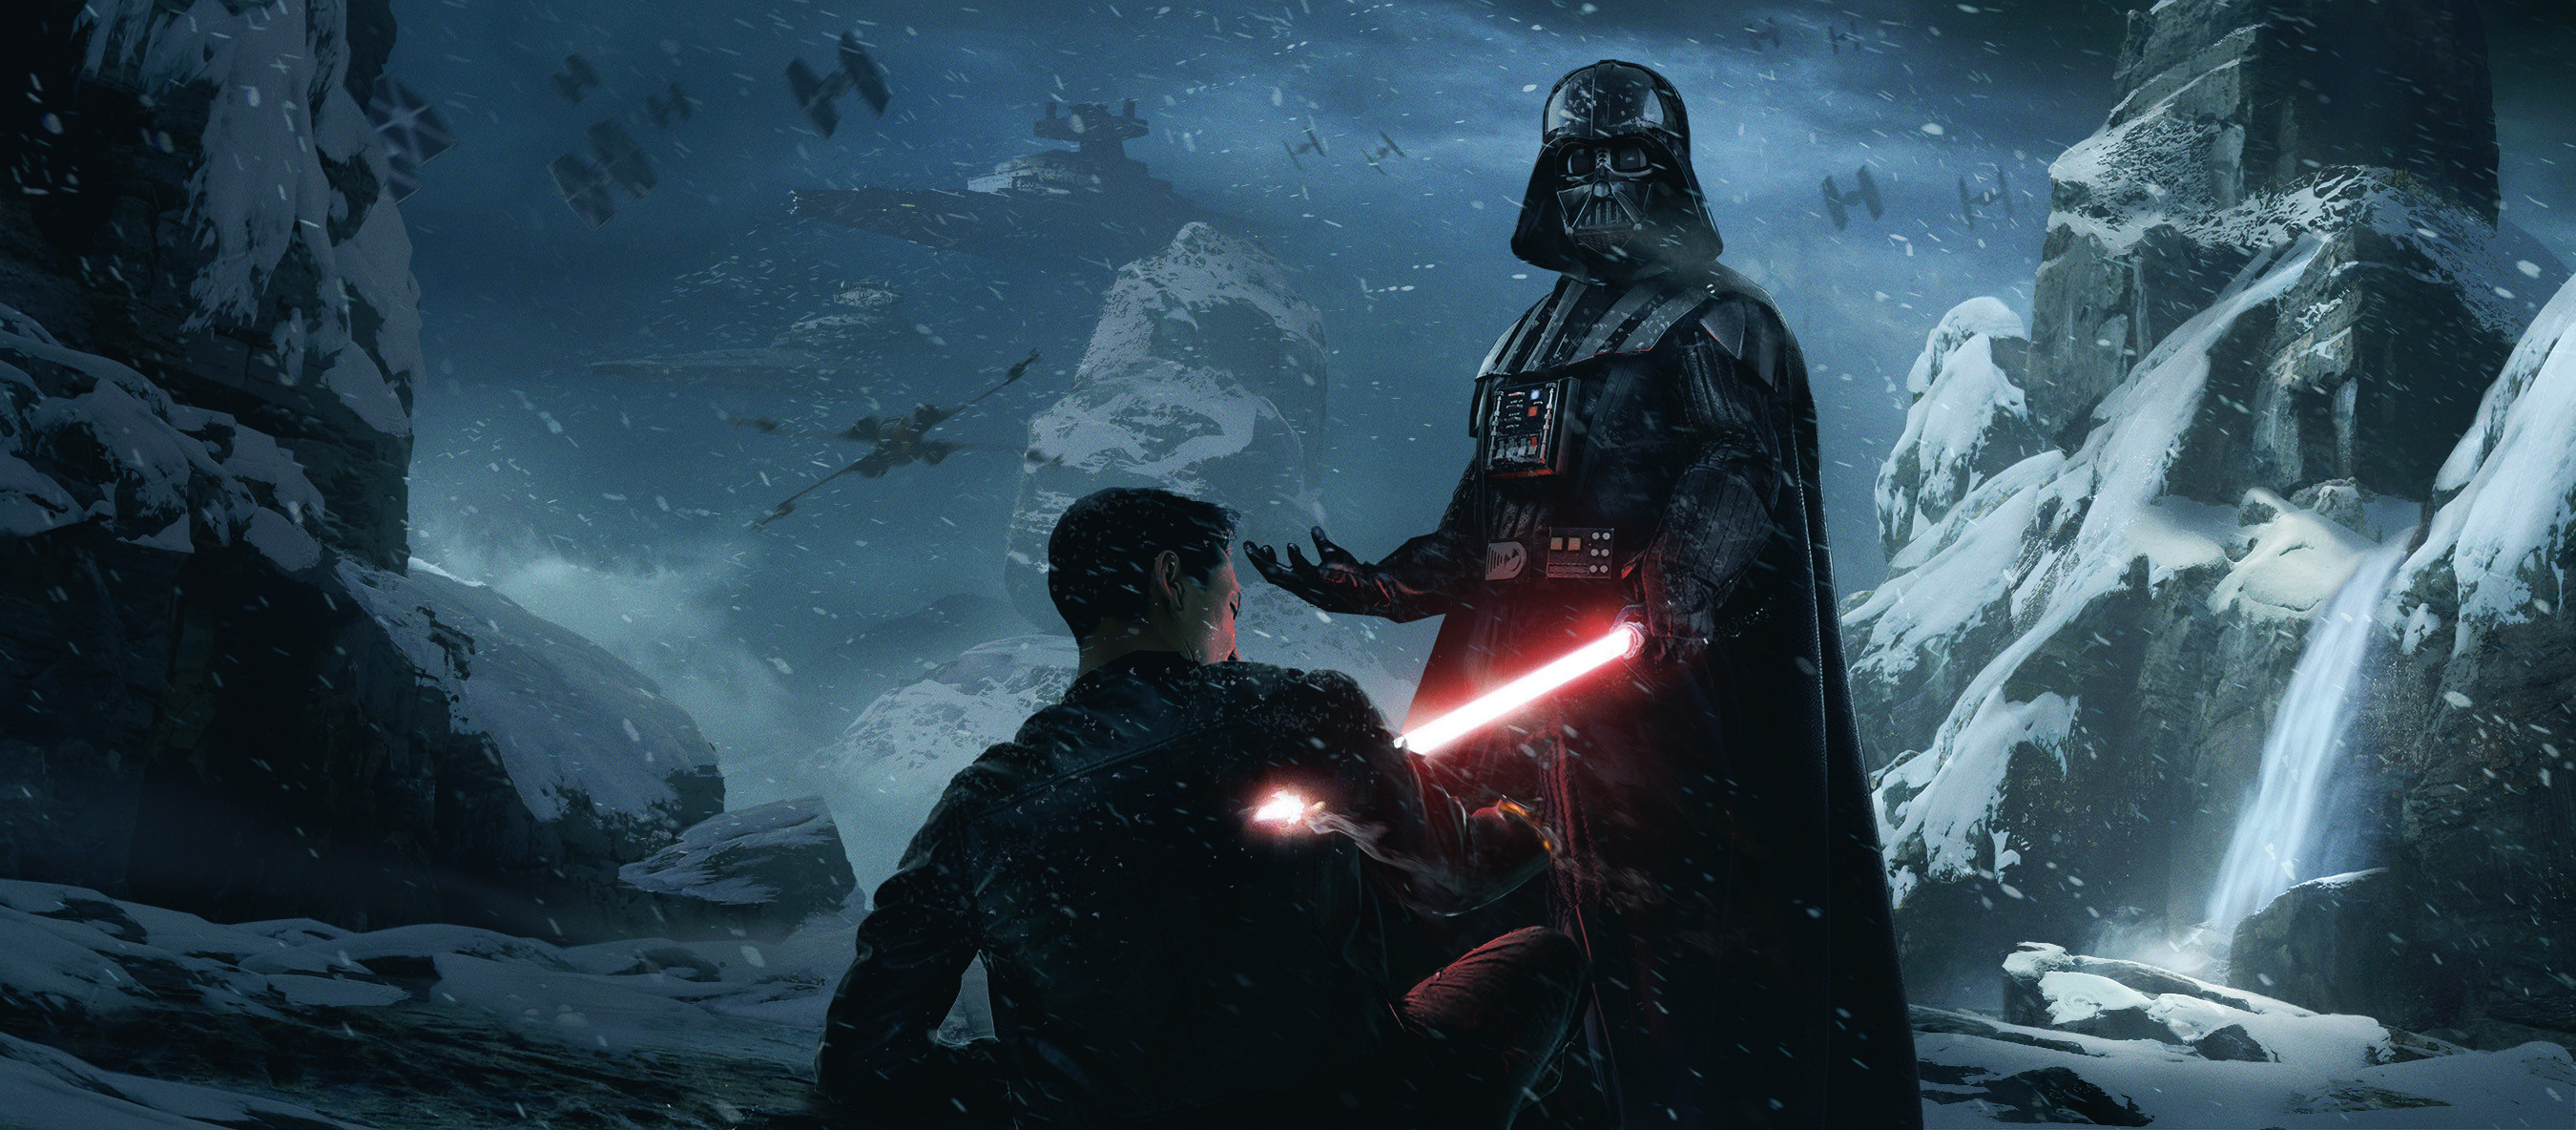 General 2700x1184 fantasy art artwork Star Wars Darth Vader lightsaber